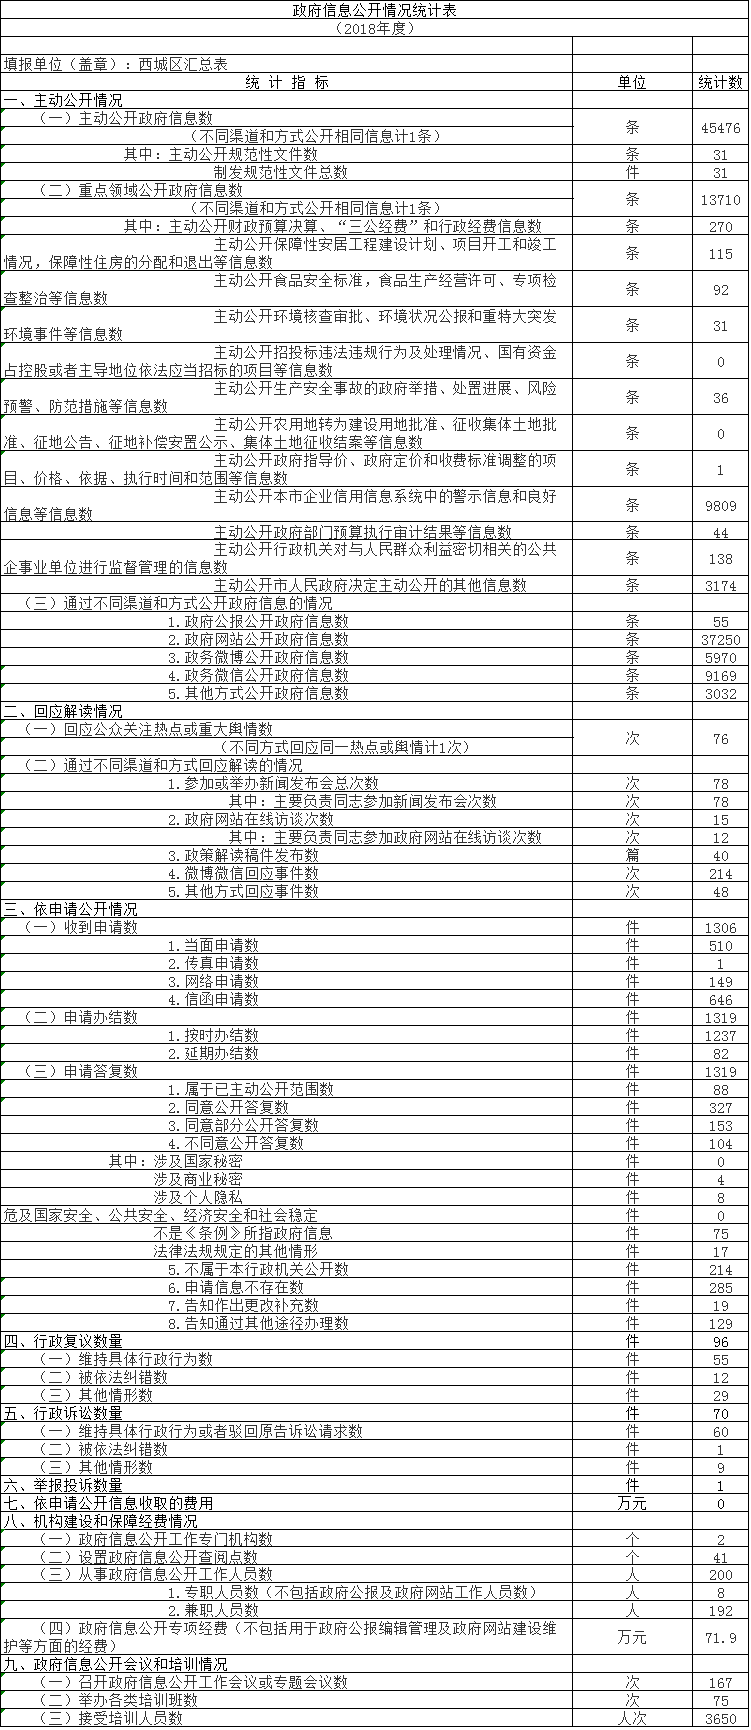 北京市西城區人民政府2018年政府信息公開工作年度報告